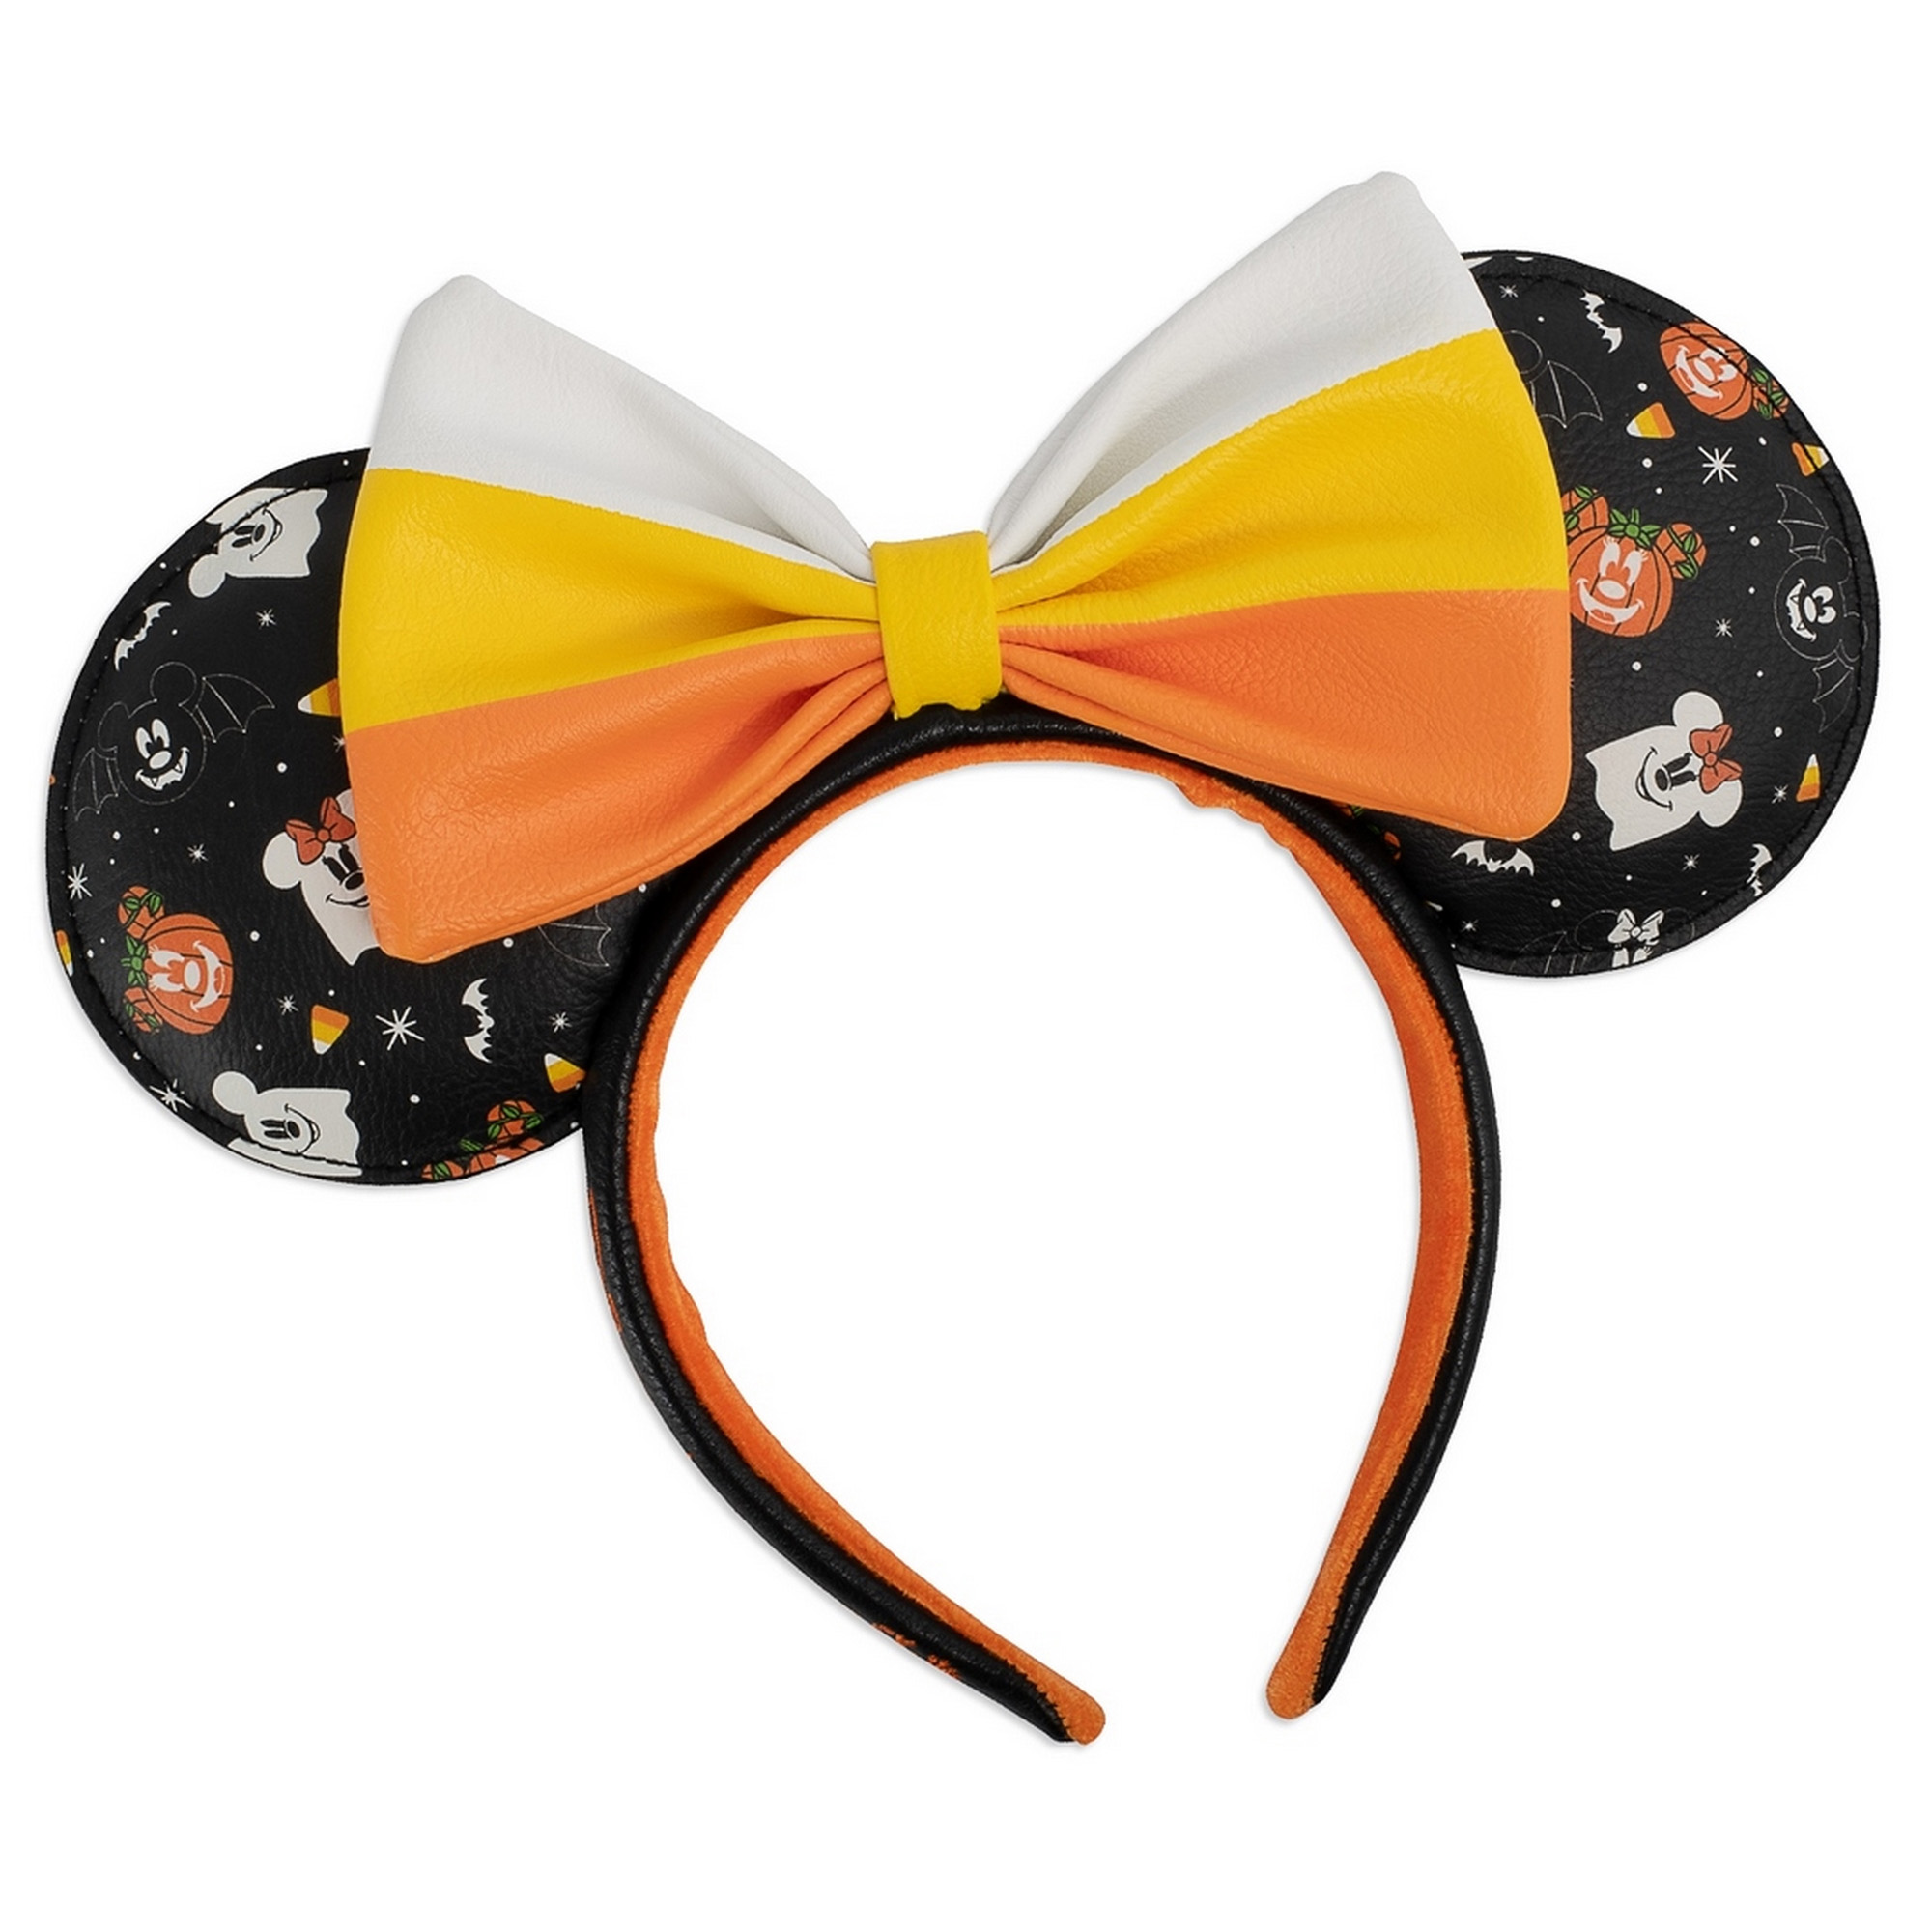 Cerchietto  con orecchie di Minnie Spooky Mice Candy - Disney